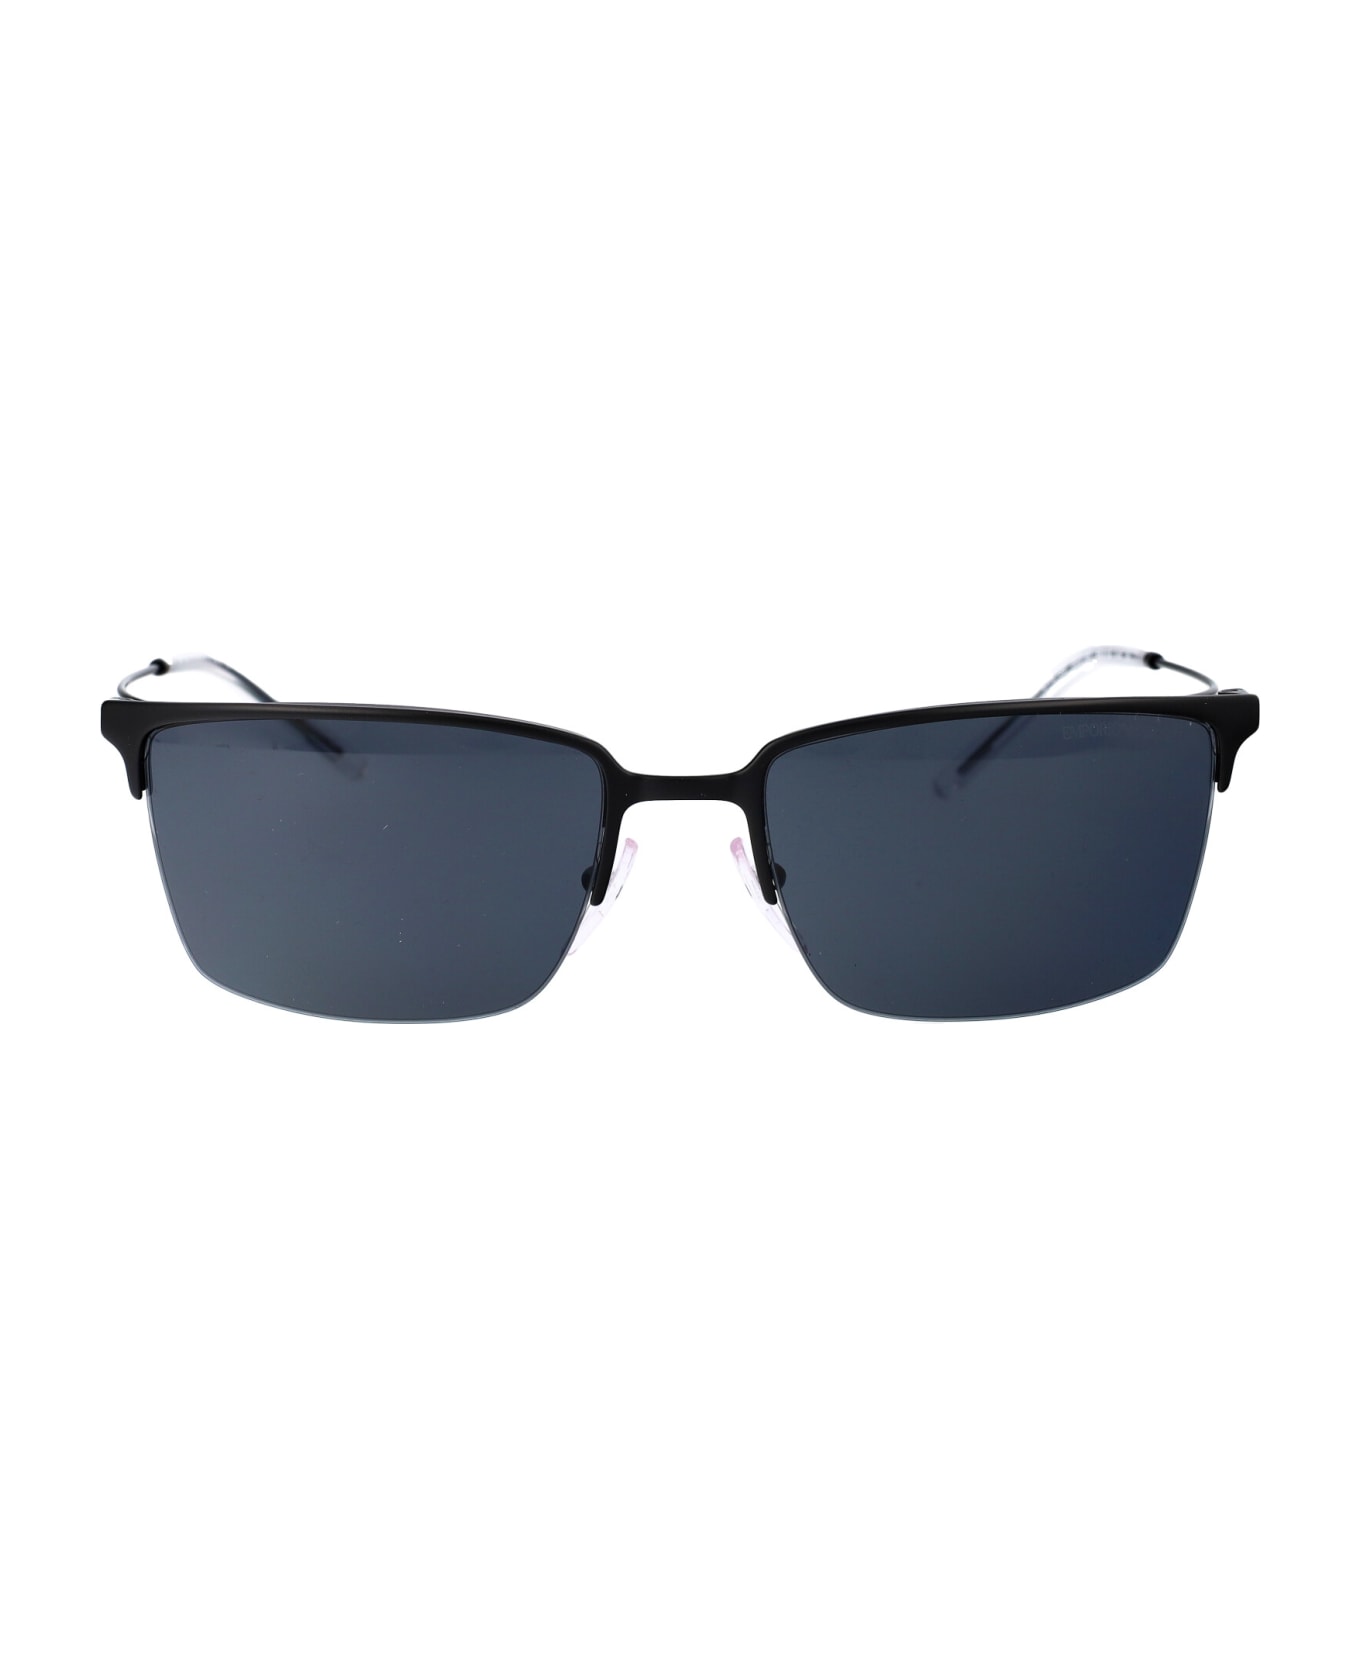 Emporio Armani 0ea2155 Sunglasses - 300187 MATTE BLACK